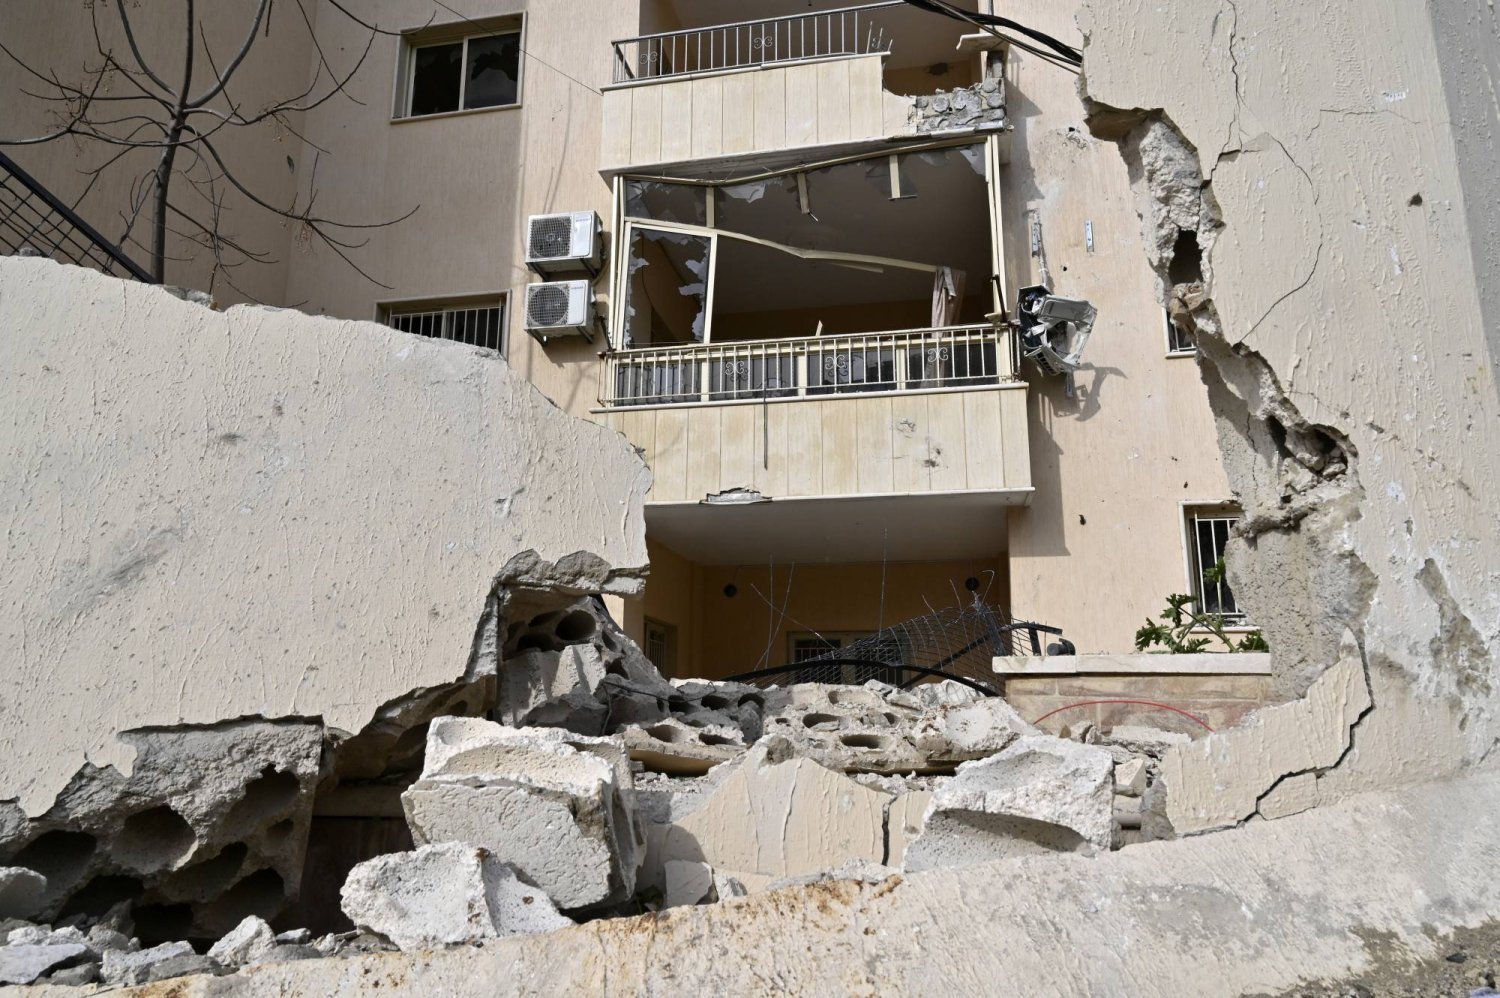 İsrail ve Hizbullah Arasındaki Gerilim Tırmanıyor: Güney Lübnan'da Askeri Tesislere Hava Saldırıları